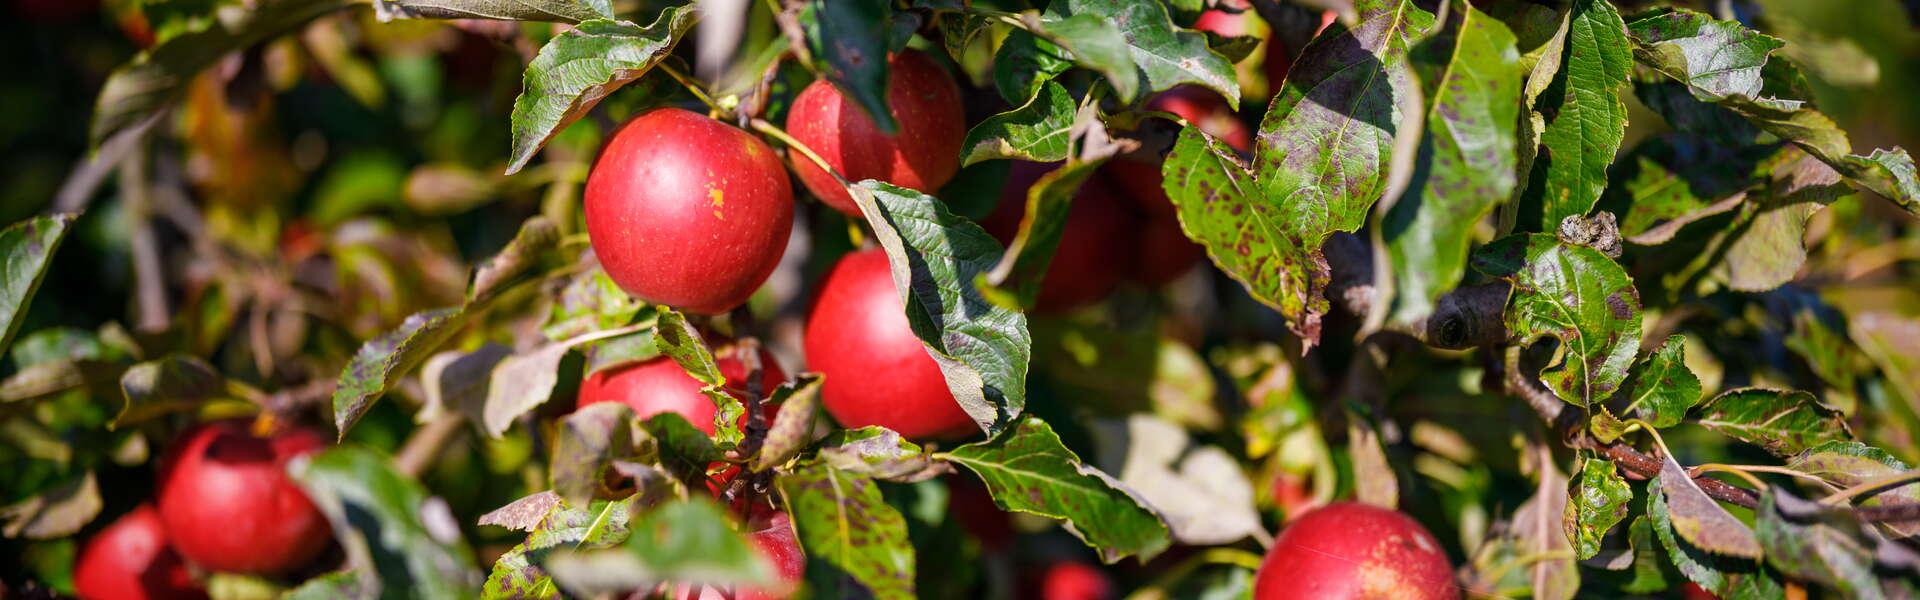 czerwone jabłka łąckie wiszące na drzewie